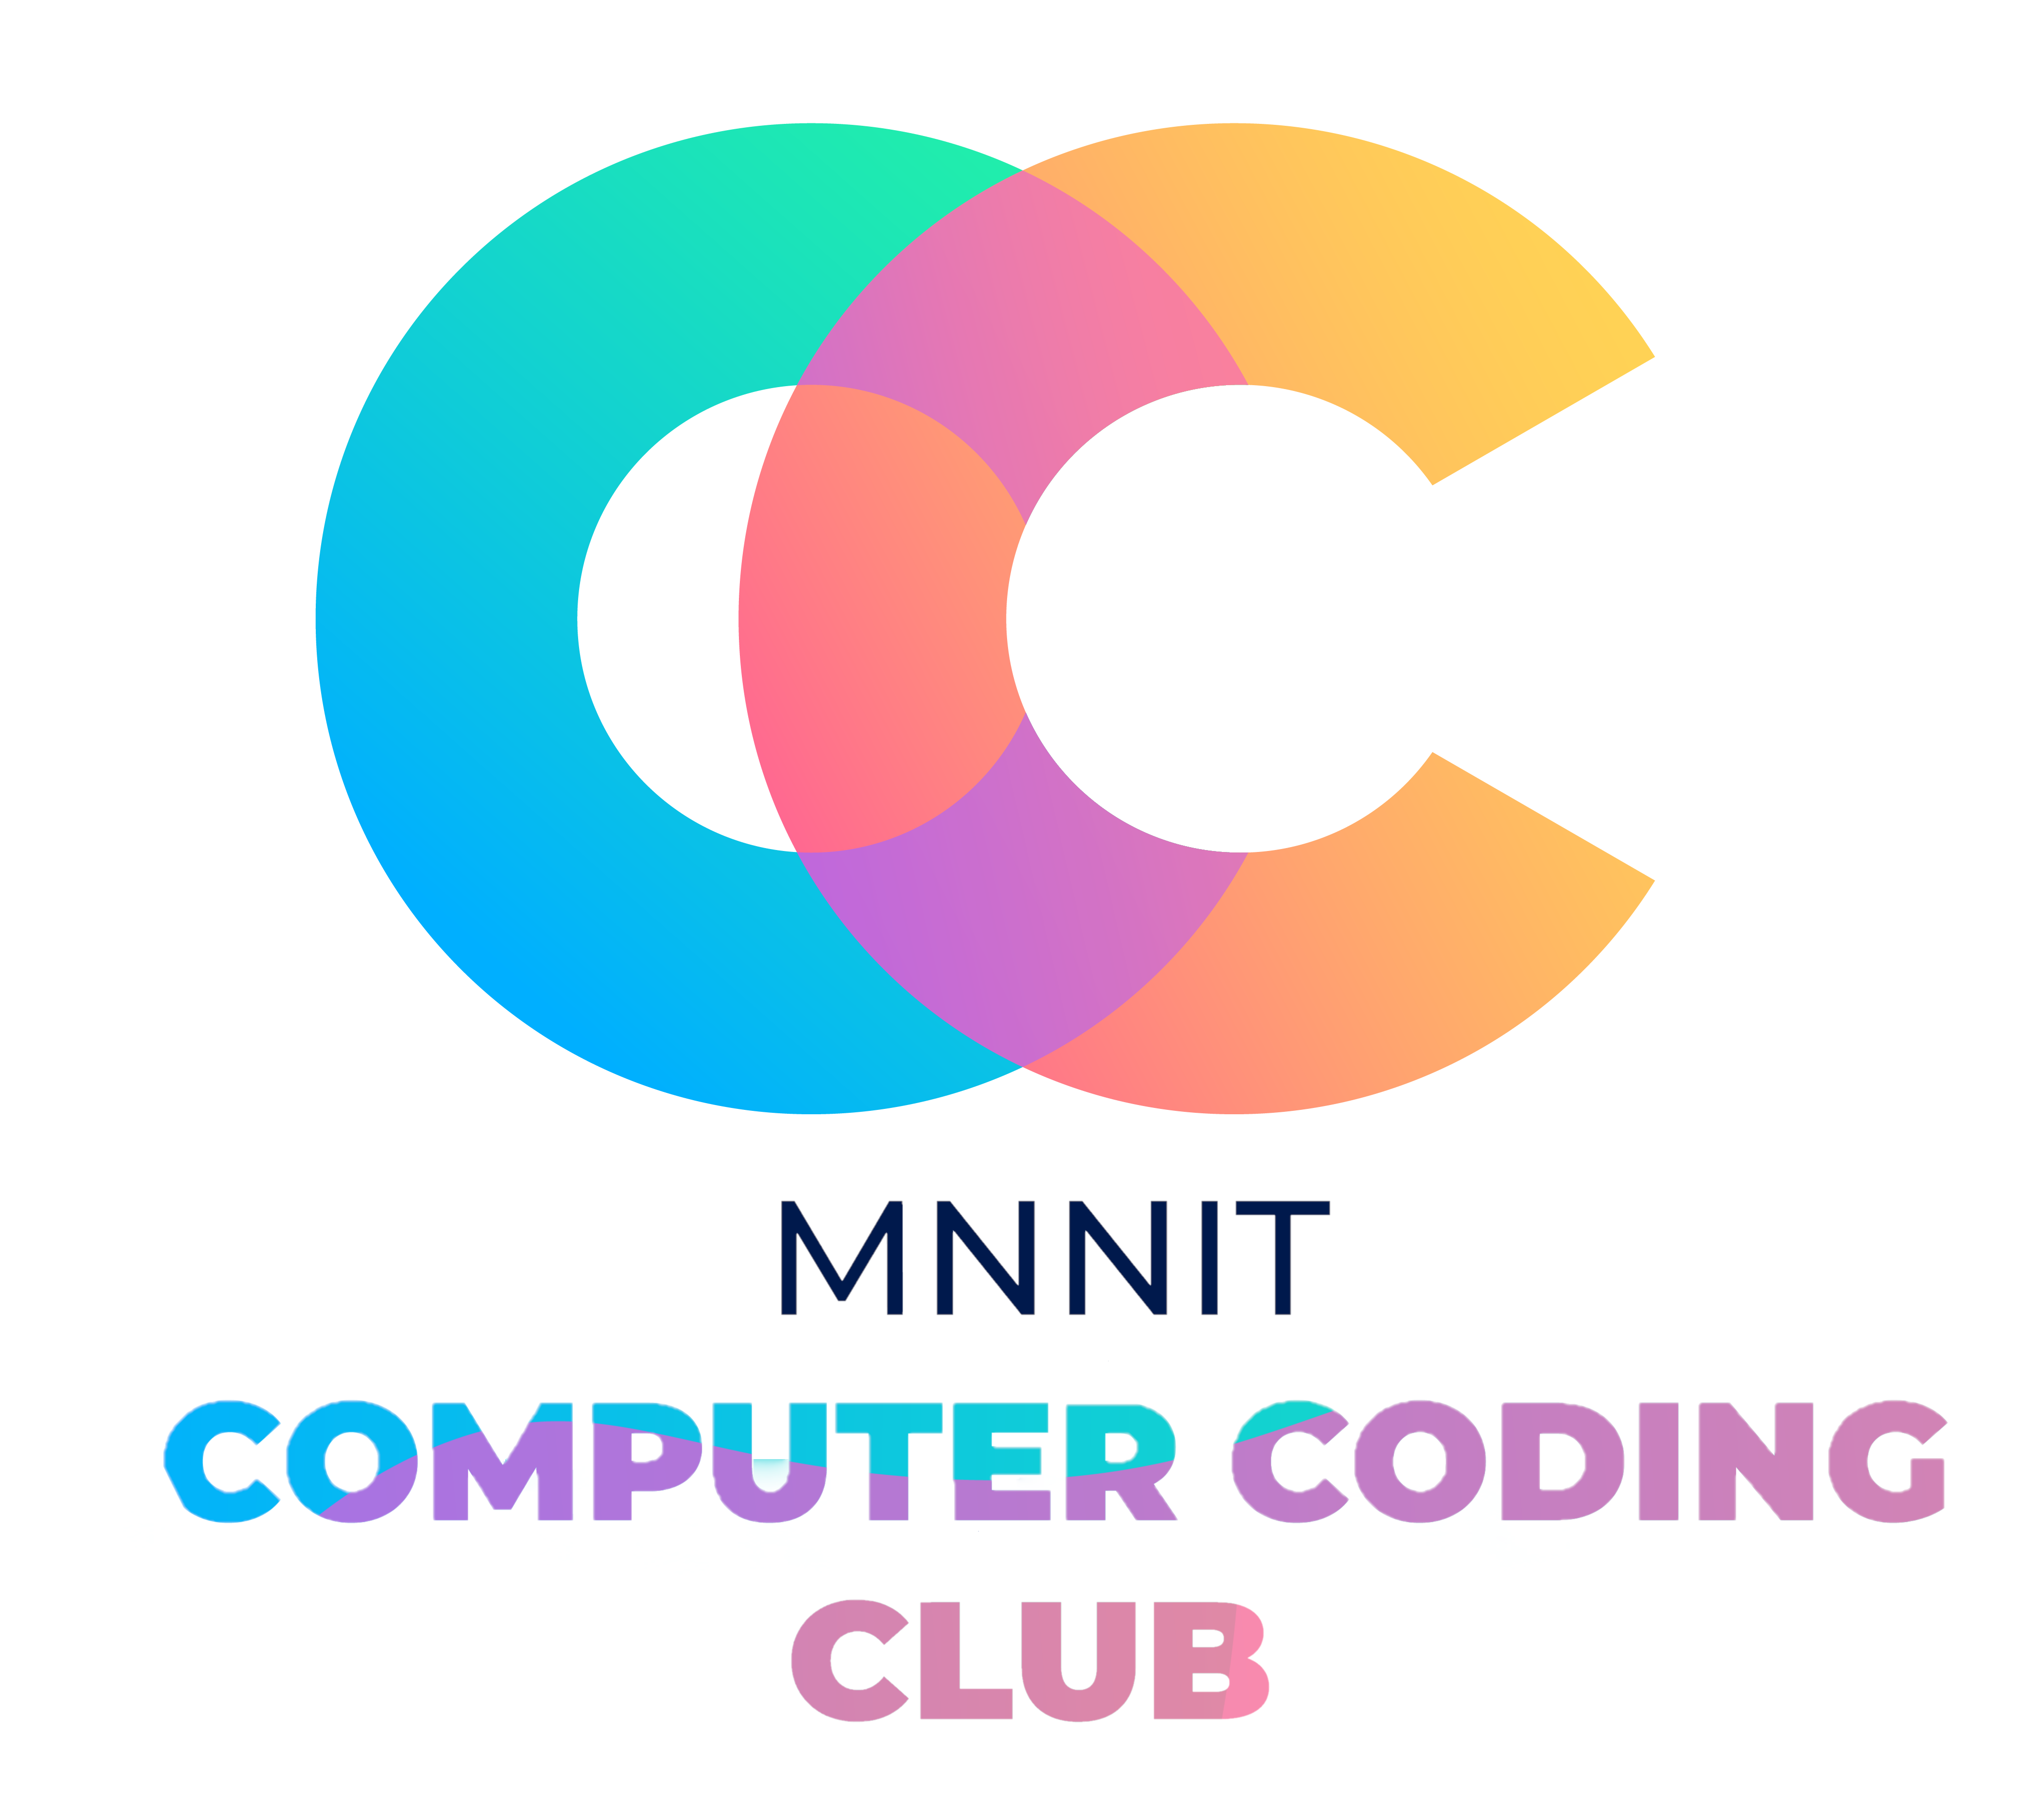 MNNIT CC Club logo